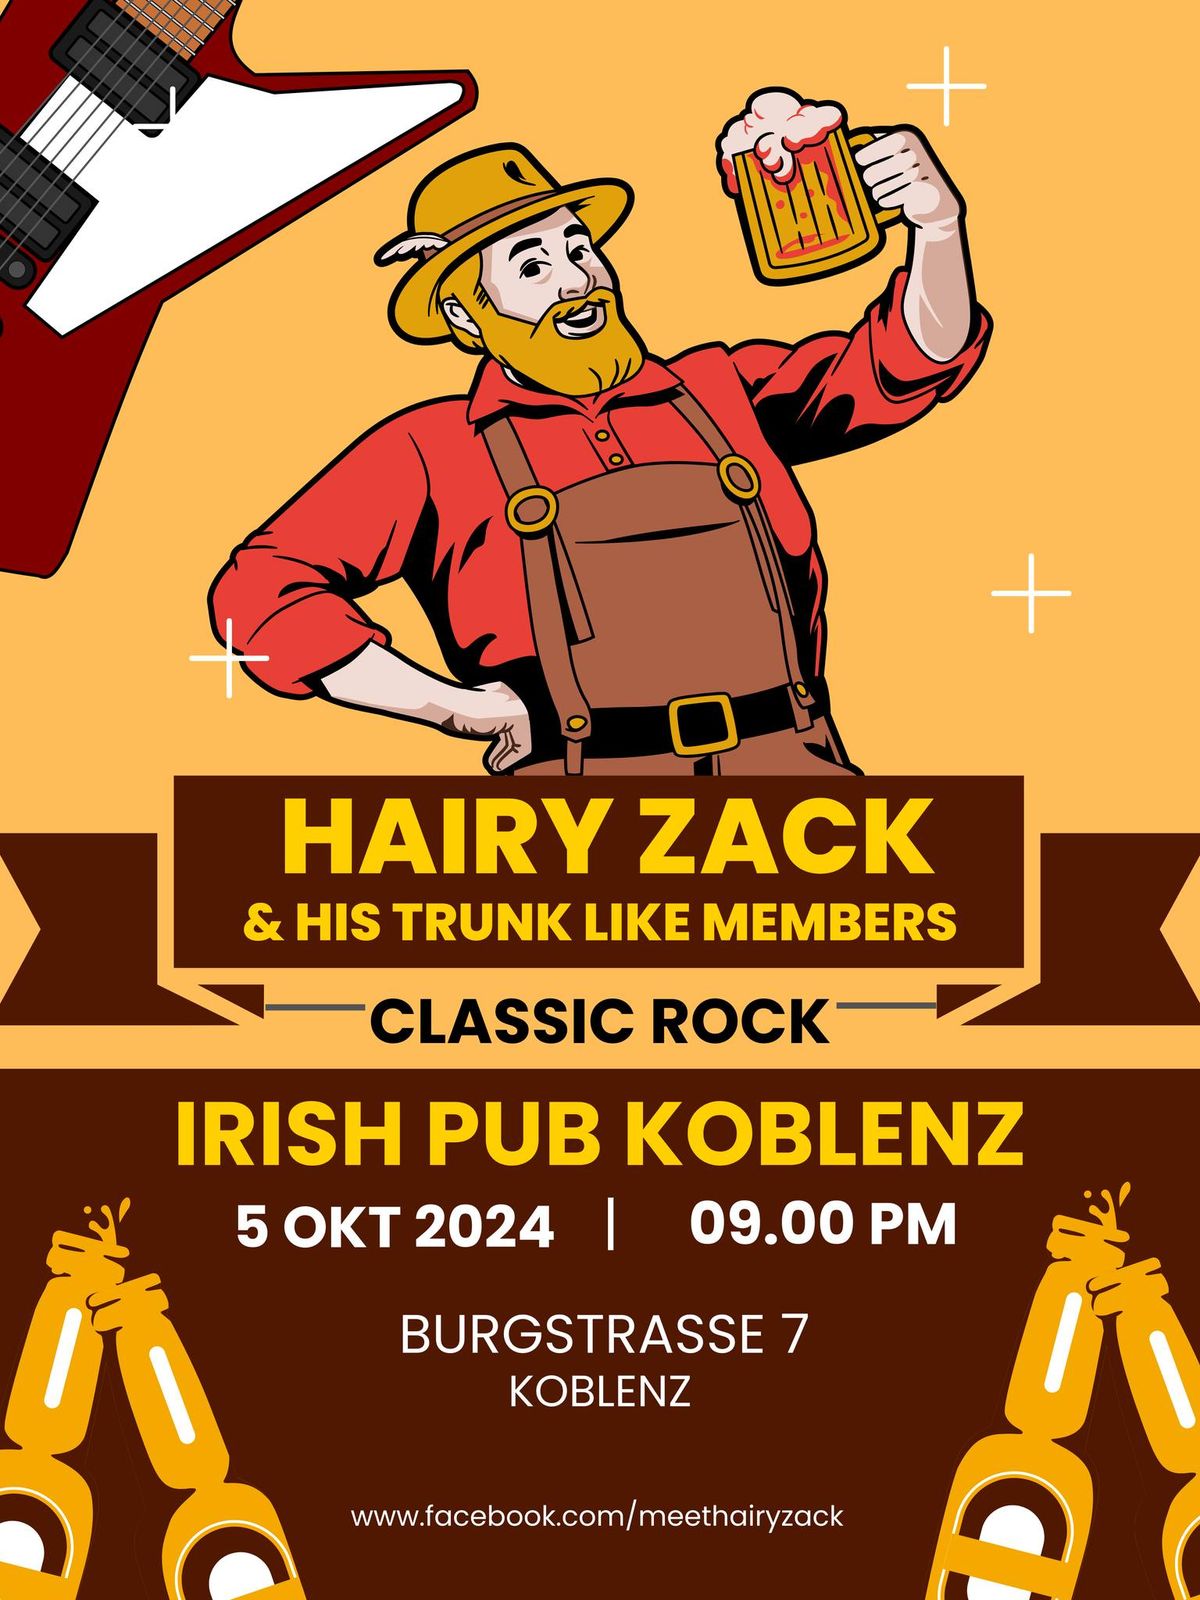 Hairy doet Irish Pub Koblenz 2.0